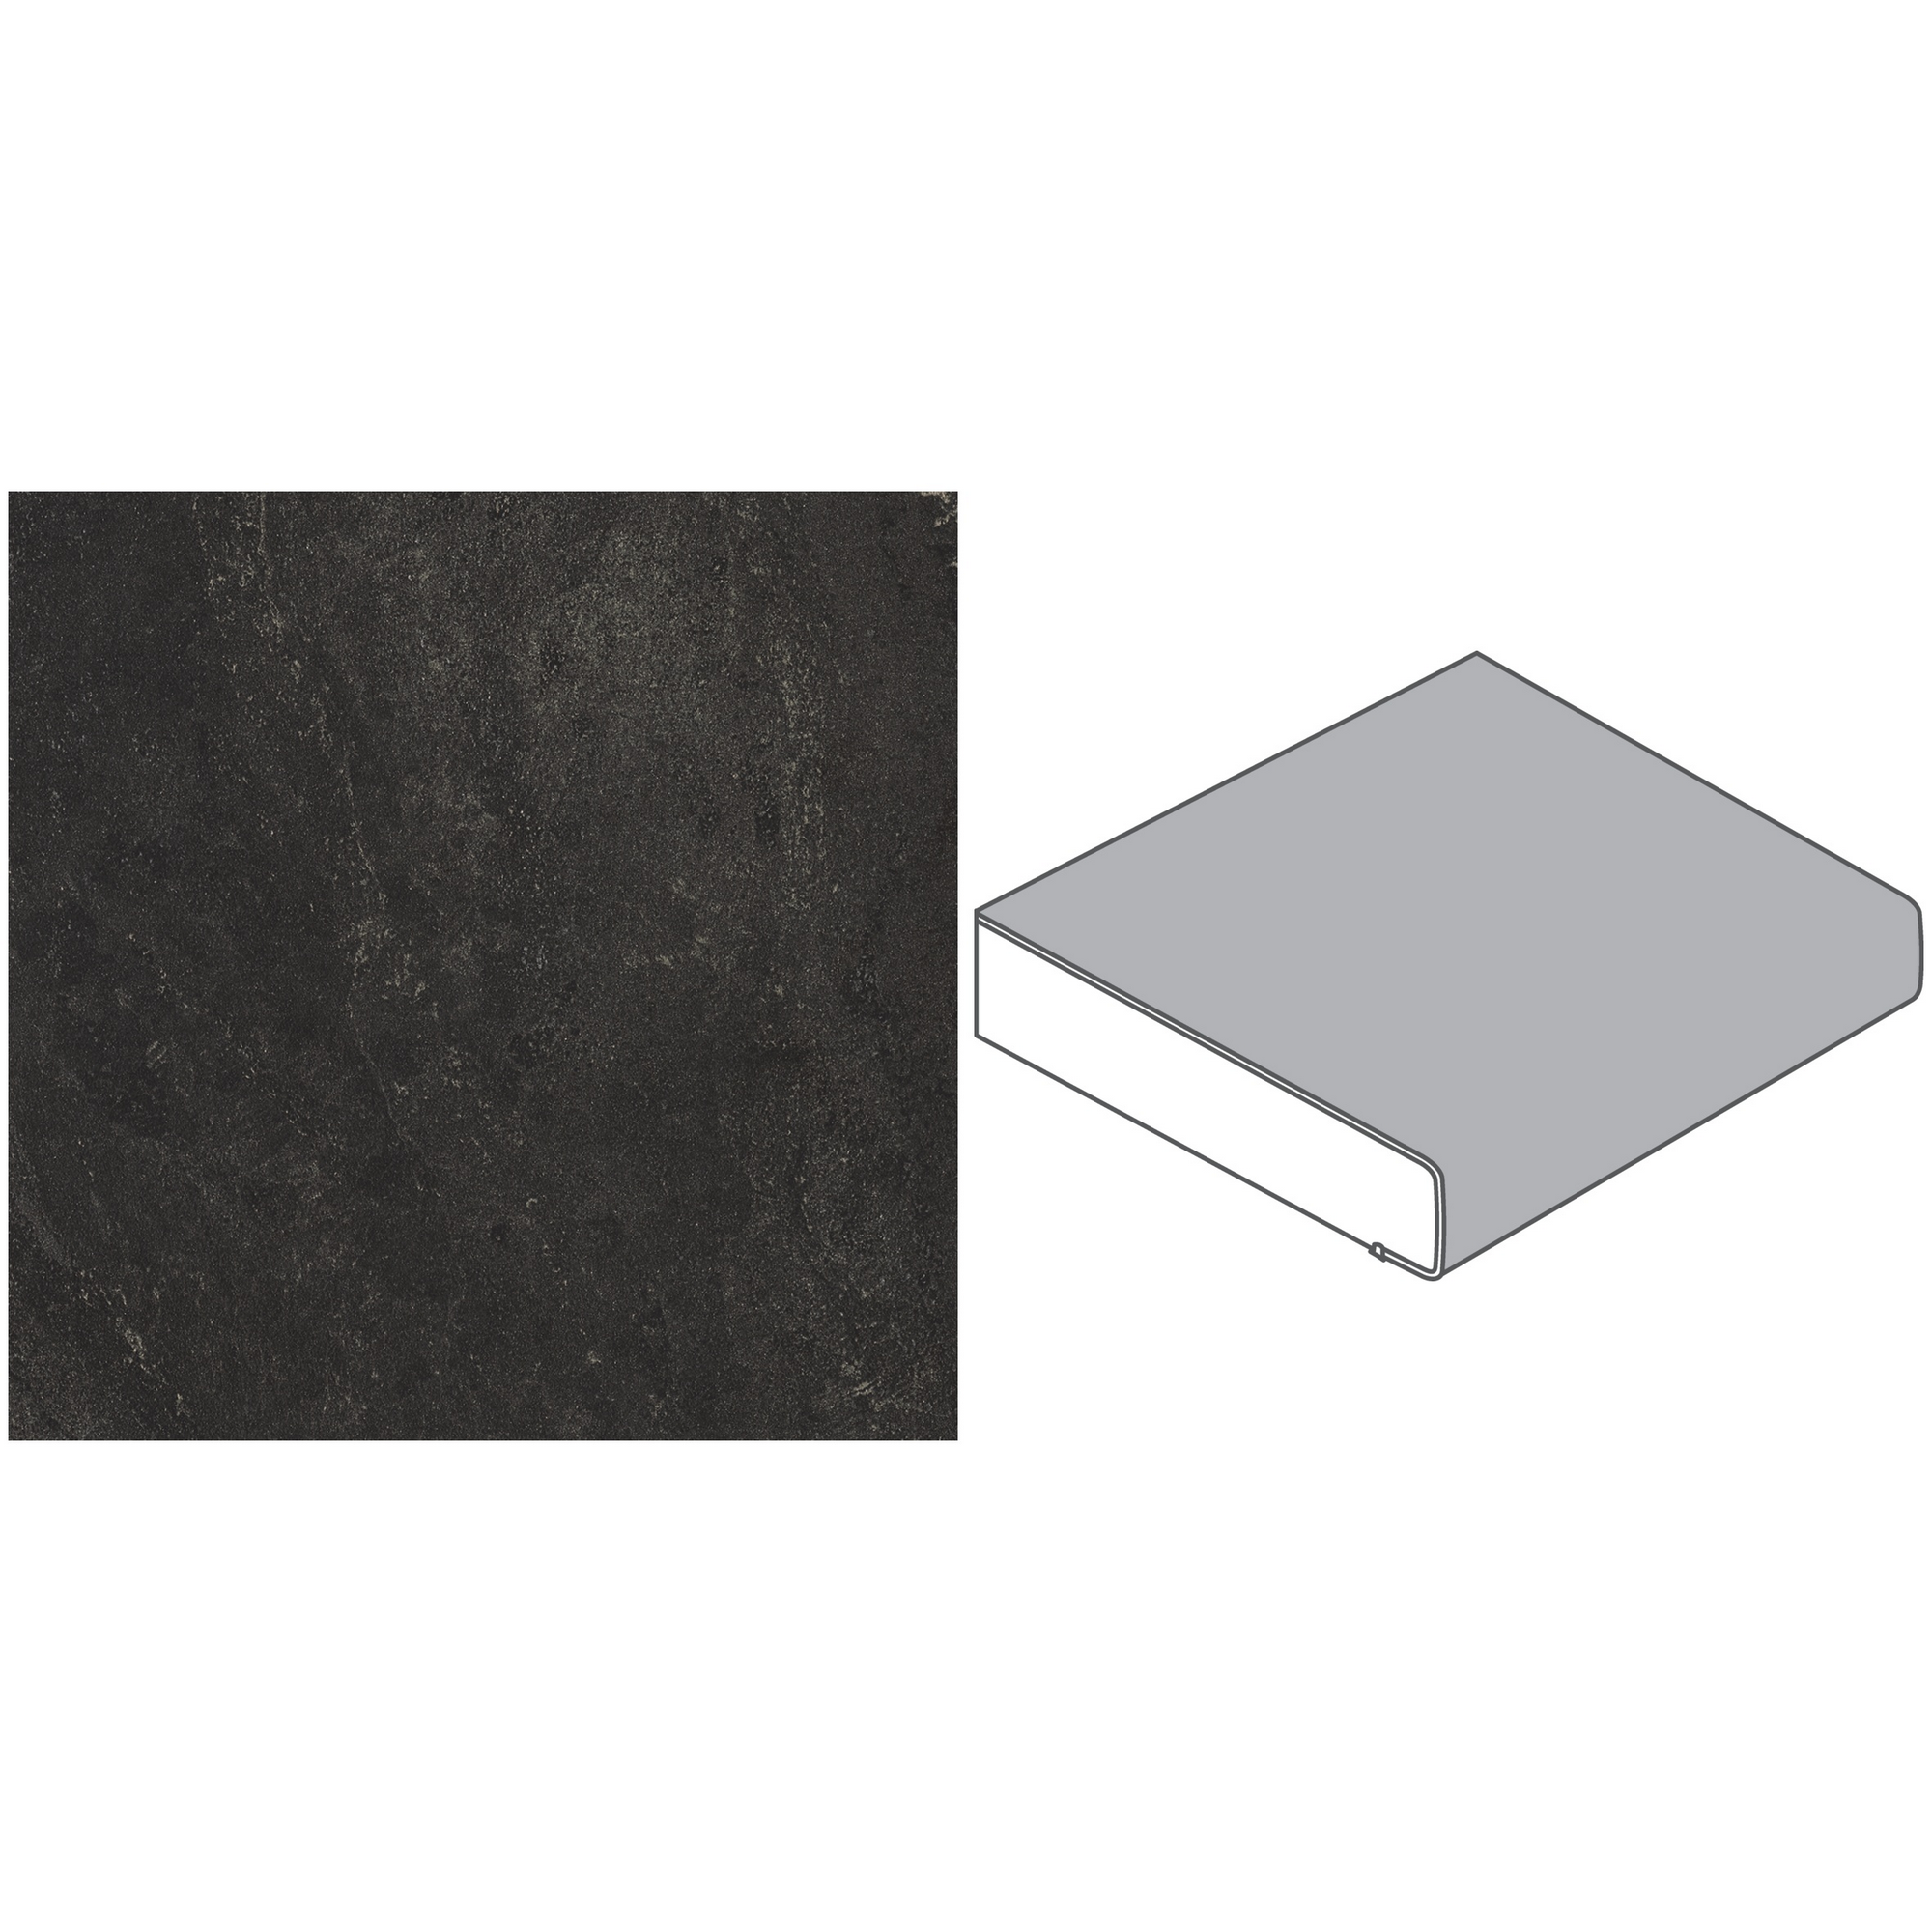 Küchenarbeitsplatte 'BZ173 SI' 4100 x 600 x 39 mm bronzit schwarz + product picture